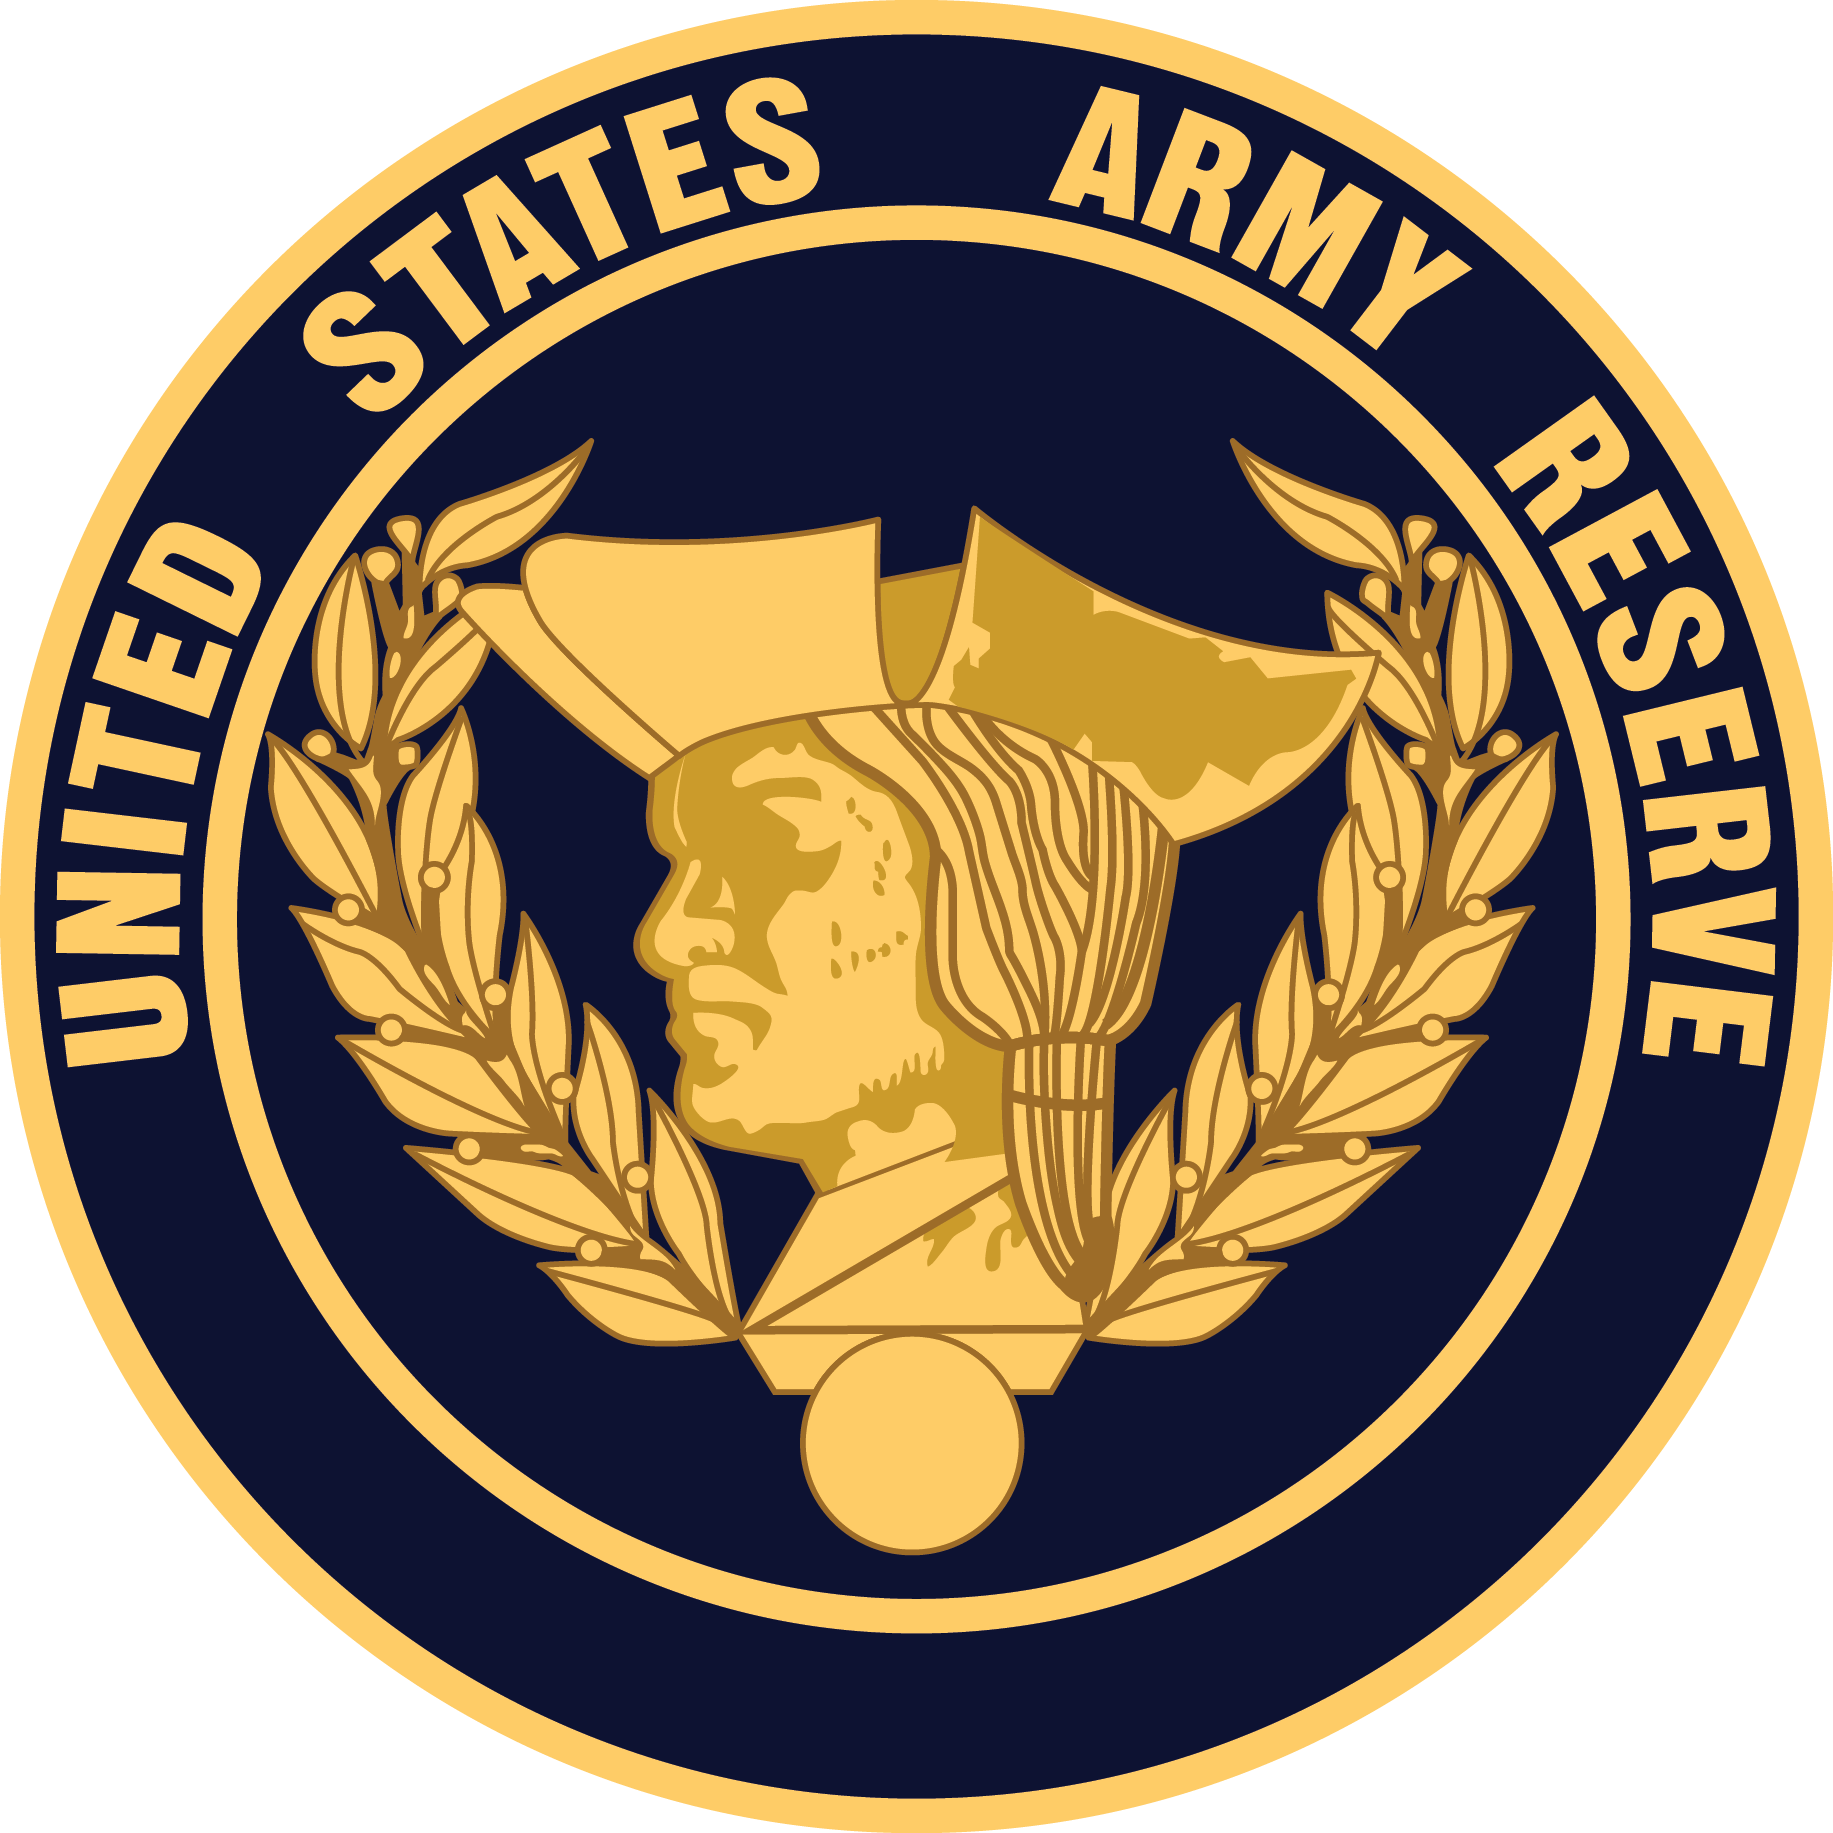 U.S. Army Reserve logo